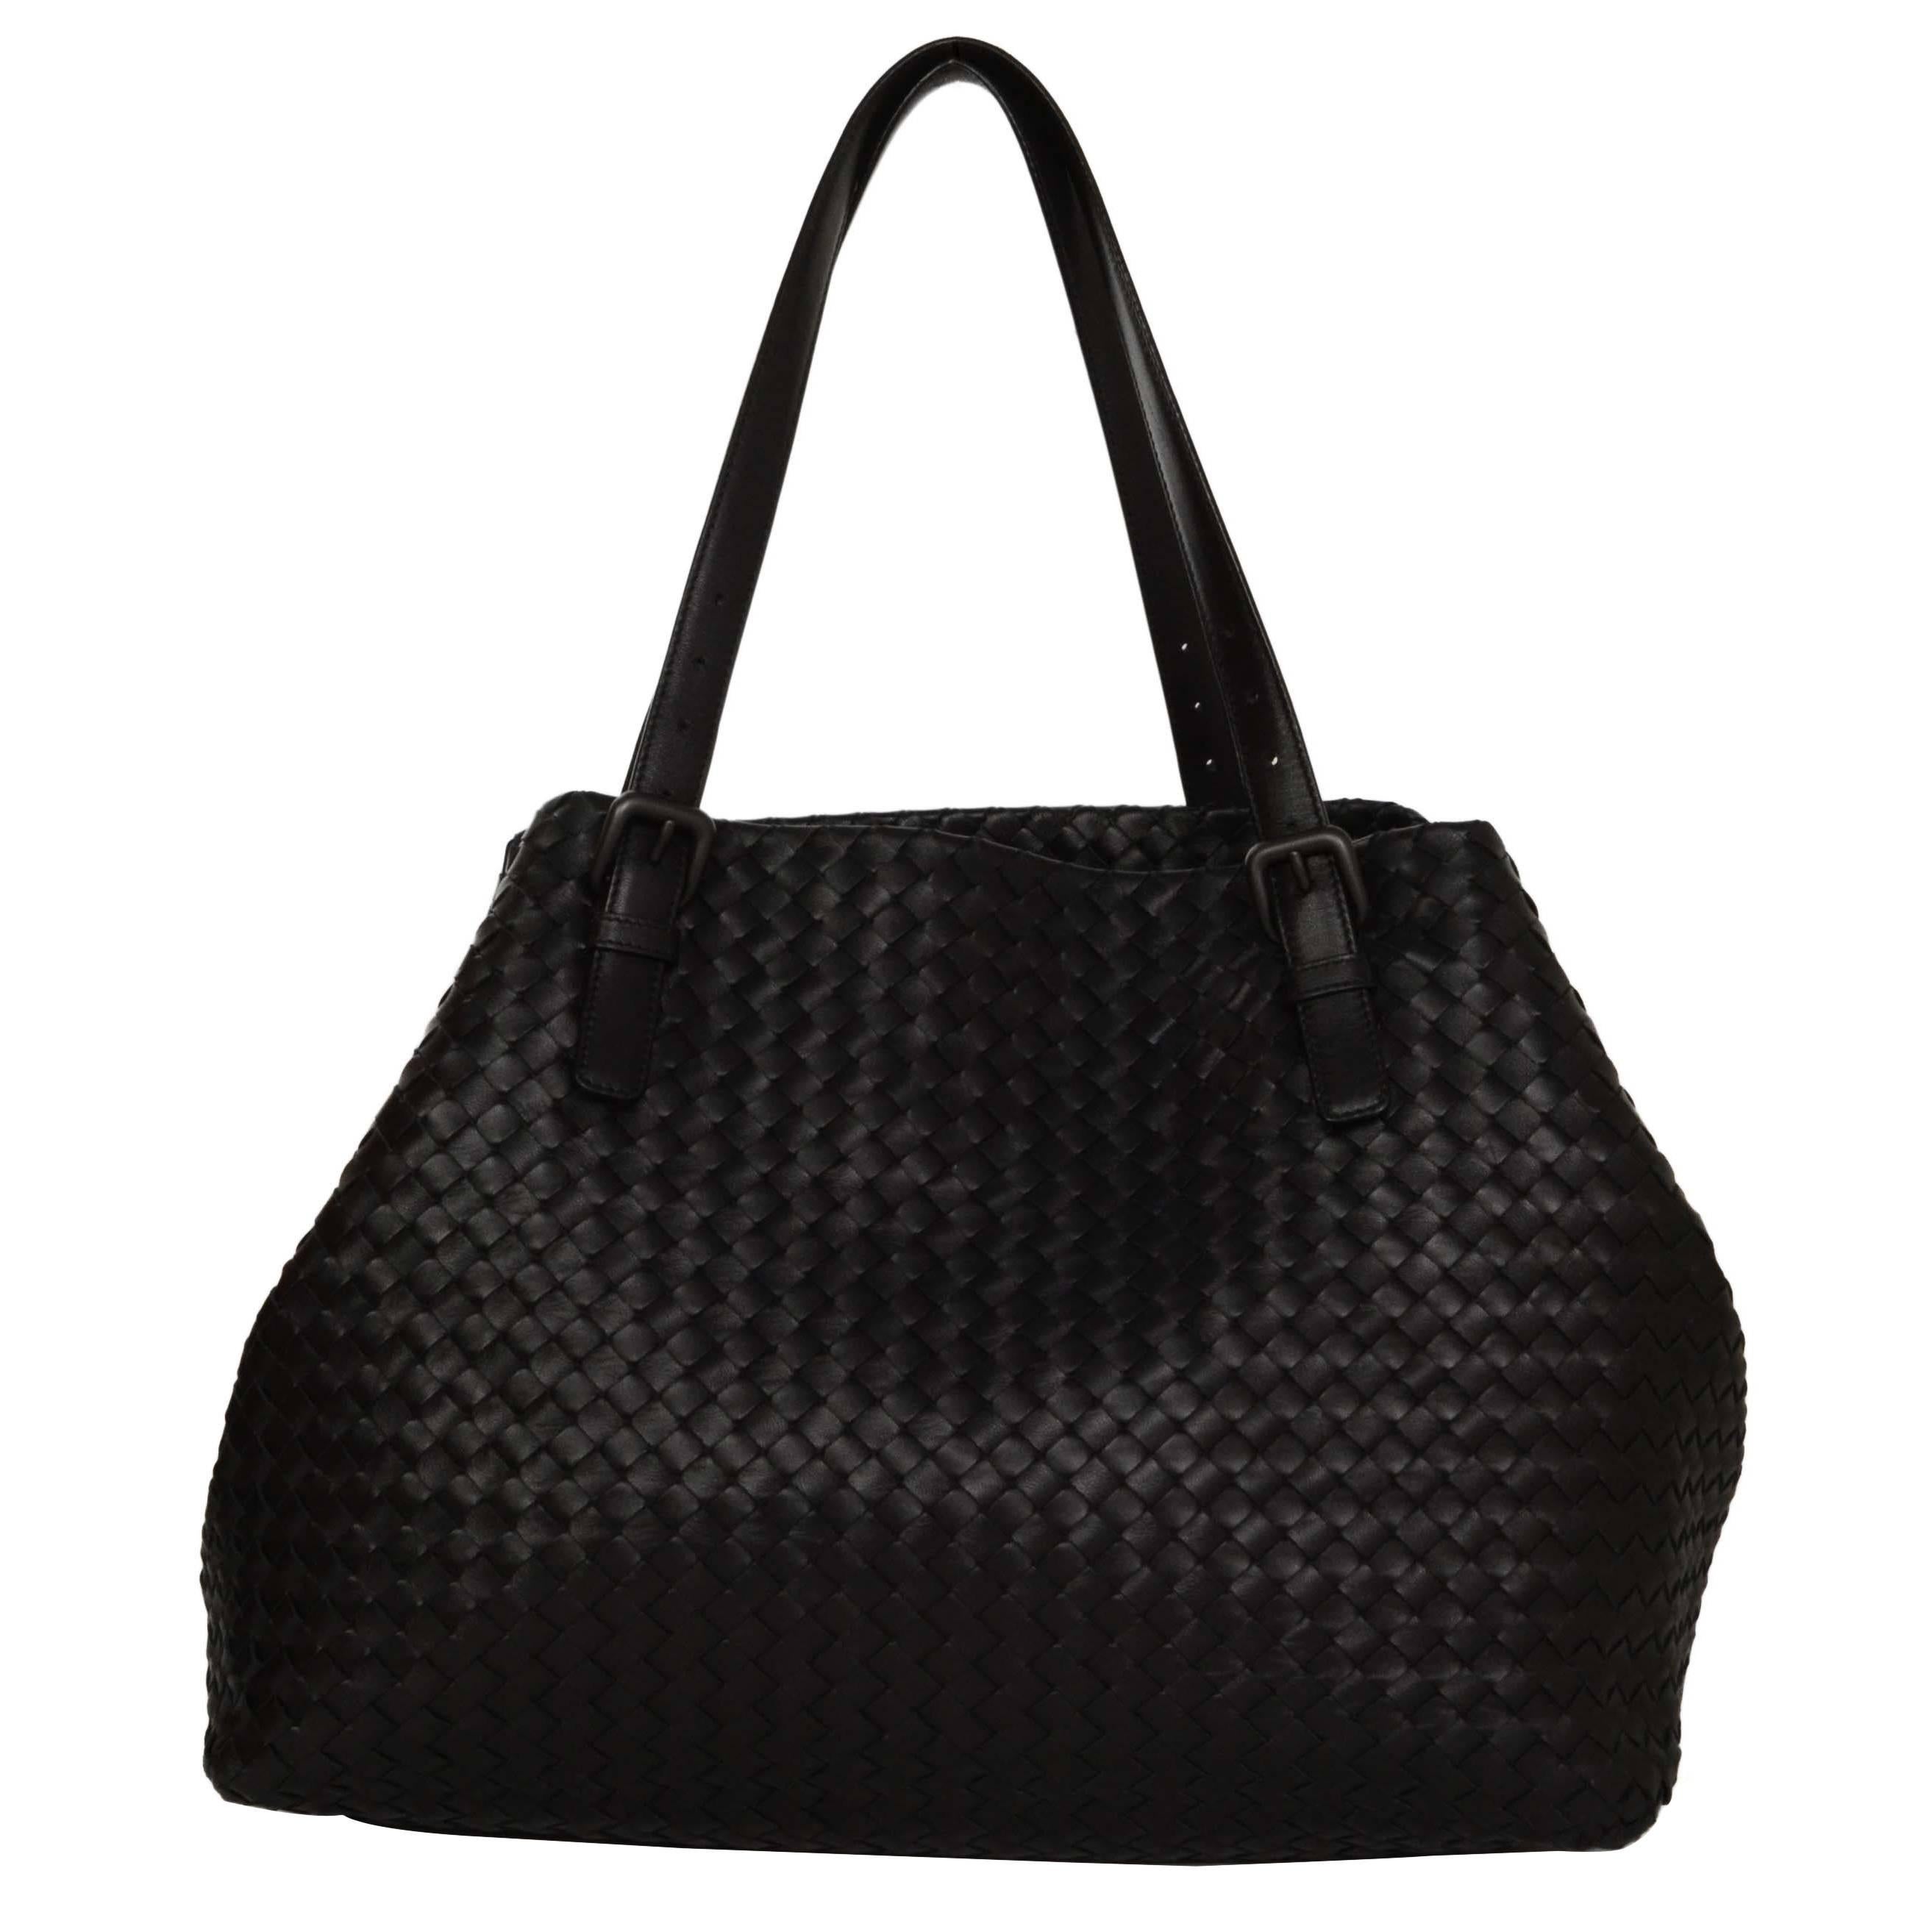 Bottega Veneta Black Woven Leather Large Intrecciato Bag rt. $3, 950